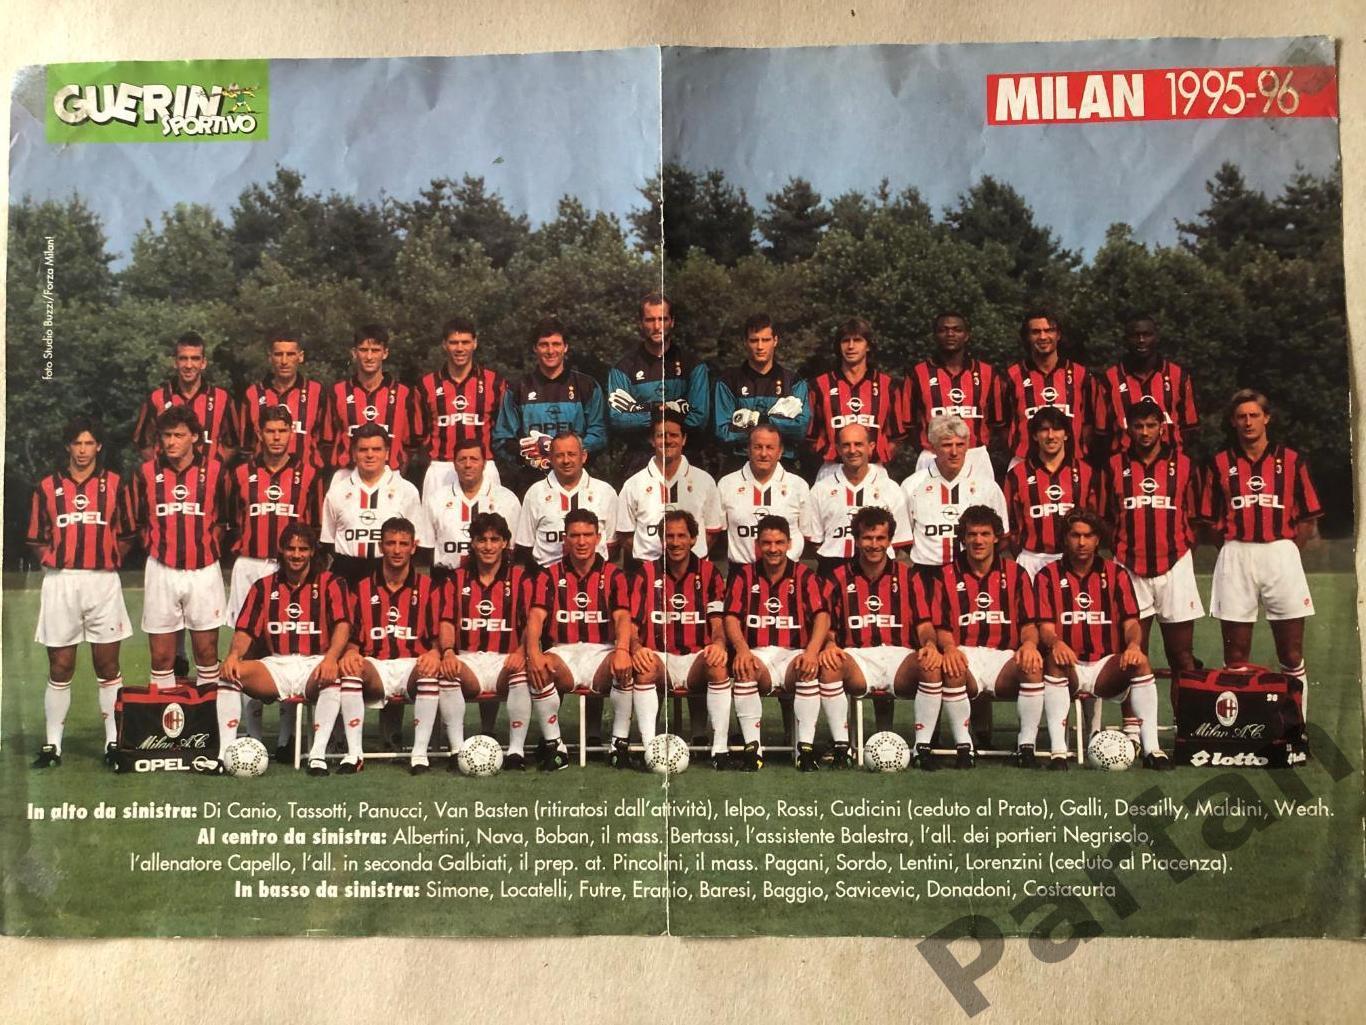 Guerin Sportivo Постер Ювентус/Мілан Juventus/Milan 1995/96 1